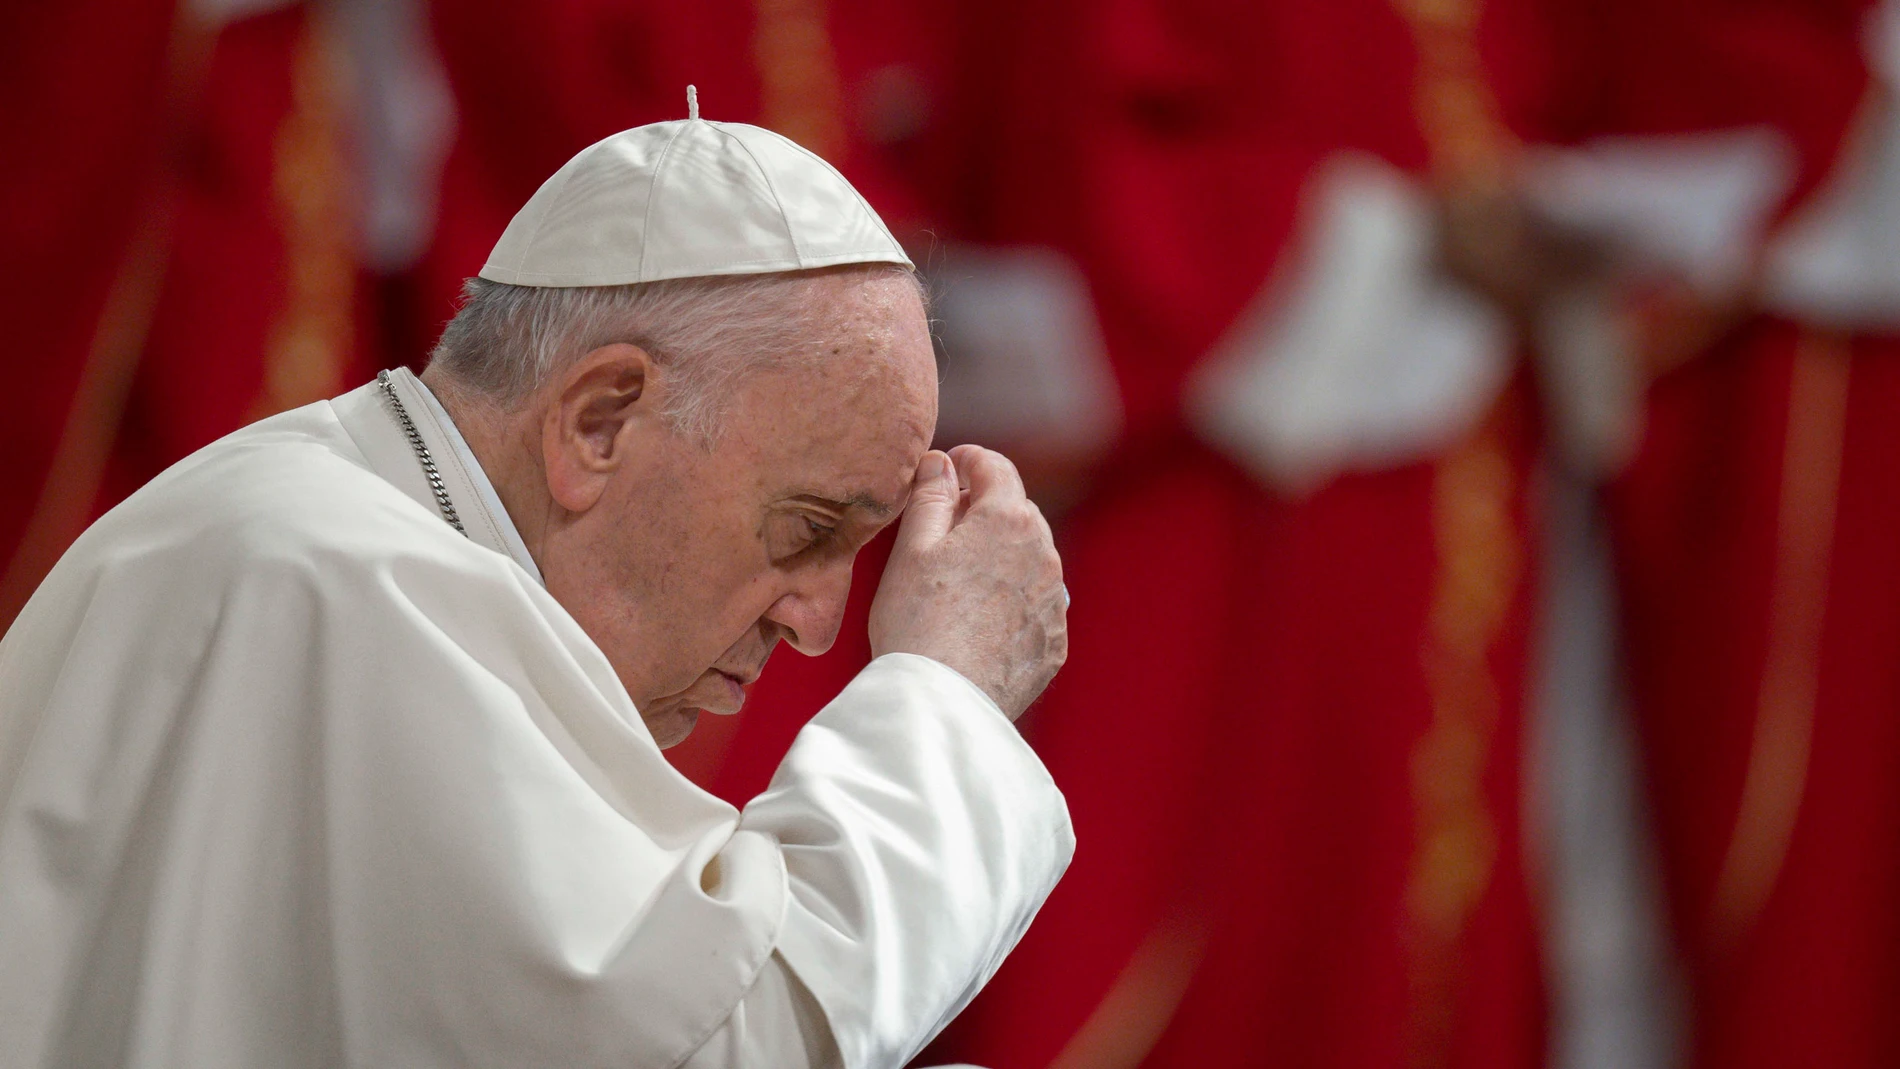 El papa Francisco ayer- domingo 5 de junio de 2022-, durante la misa de Pentecostés